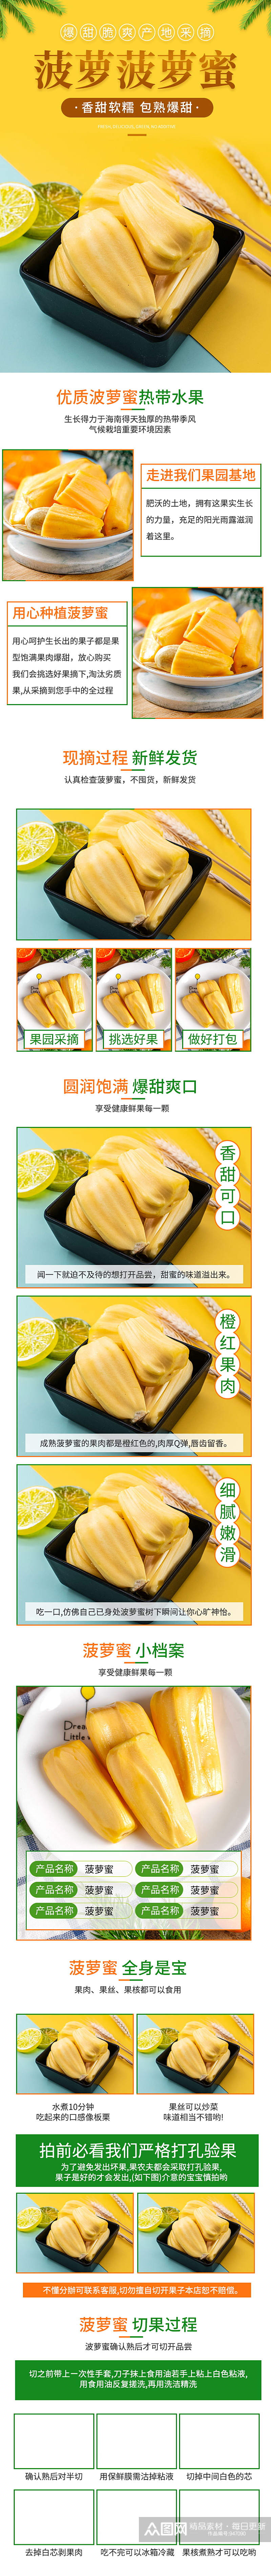 生鲜水果菠萝蜜详情页素材